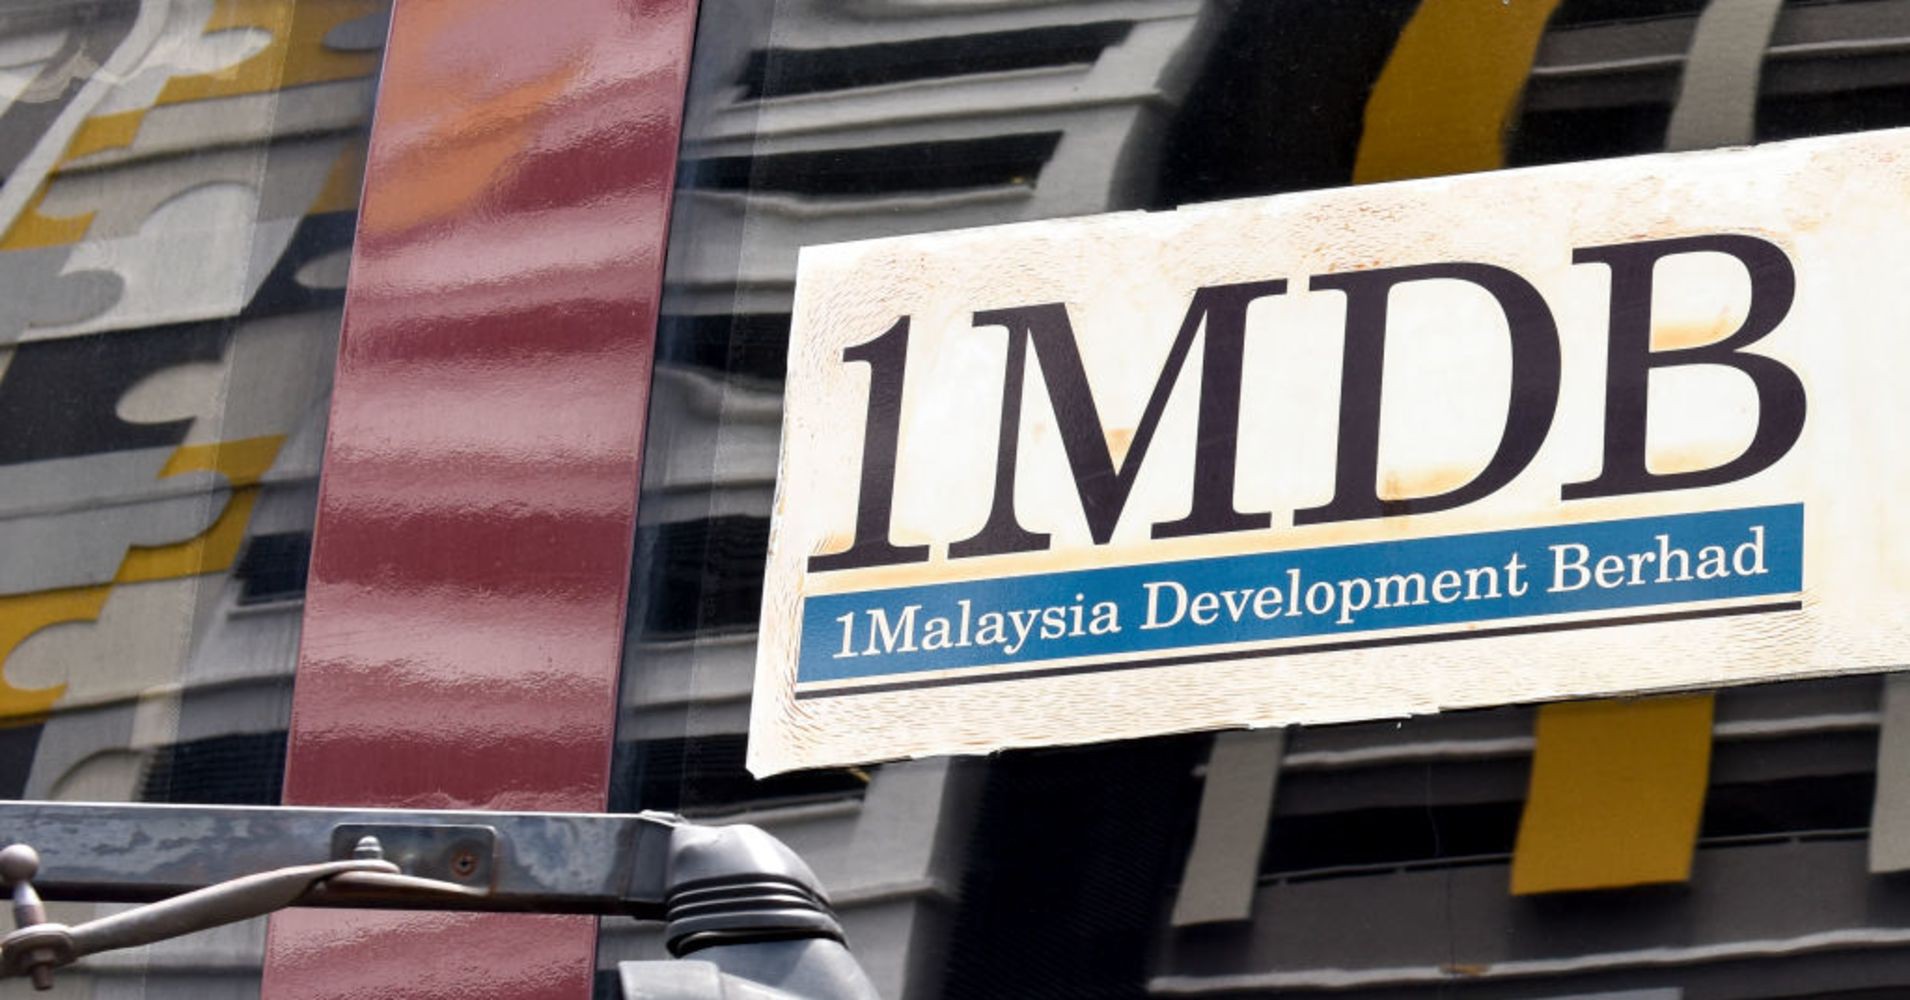 Malaysia đòi ngân hàng Mỹ bồi thường 7,5 tỷ USD vì tiếp tay cựu Thủ tướng tham nhũng vụ 1MDB - Ảnh 1.